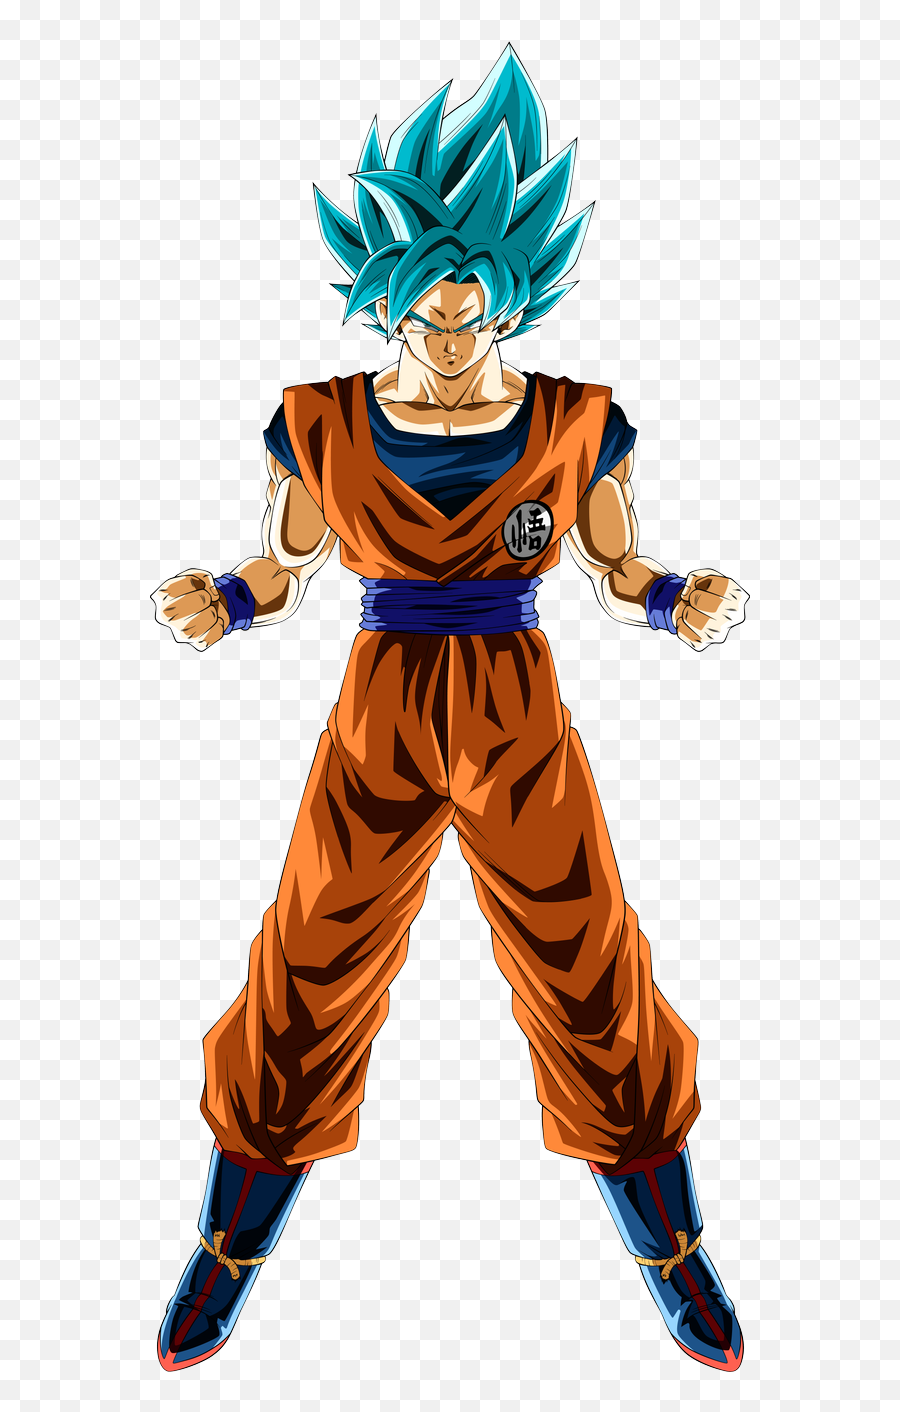 Download Free Png Goku Saiyan - Super Saiyan Blue Goku Png,Goku Super Saiyan Png